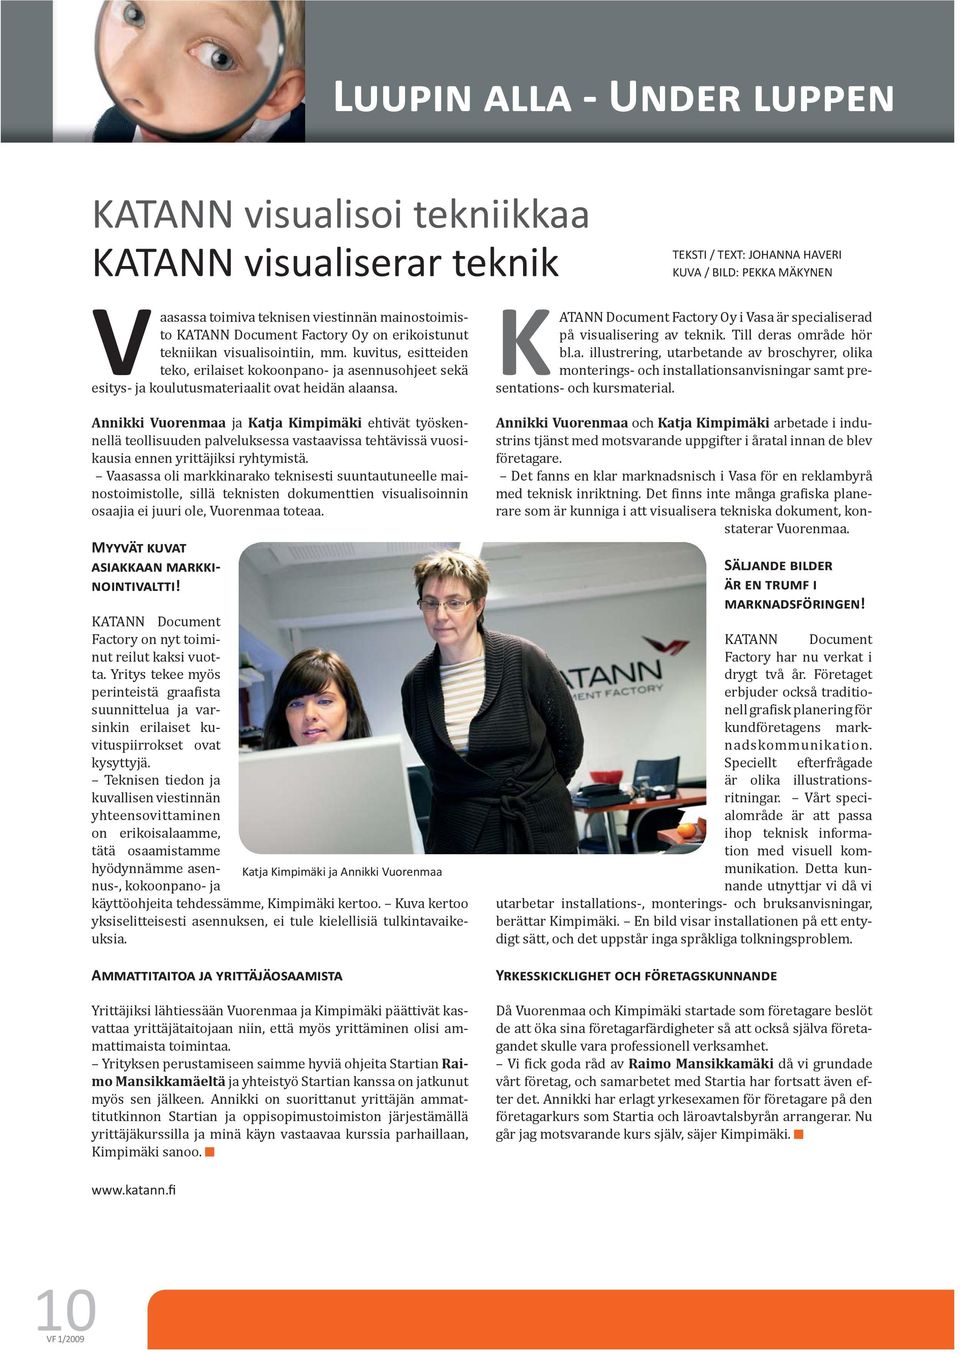 Annikki Vuorenmaa ja Katja Kimpimäki ehtivät työskennellä teollisuuden palveluksessa vastaavissa tehtävissä vuosikausia ennen yrittäjiksi ryhtymistä.